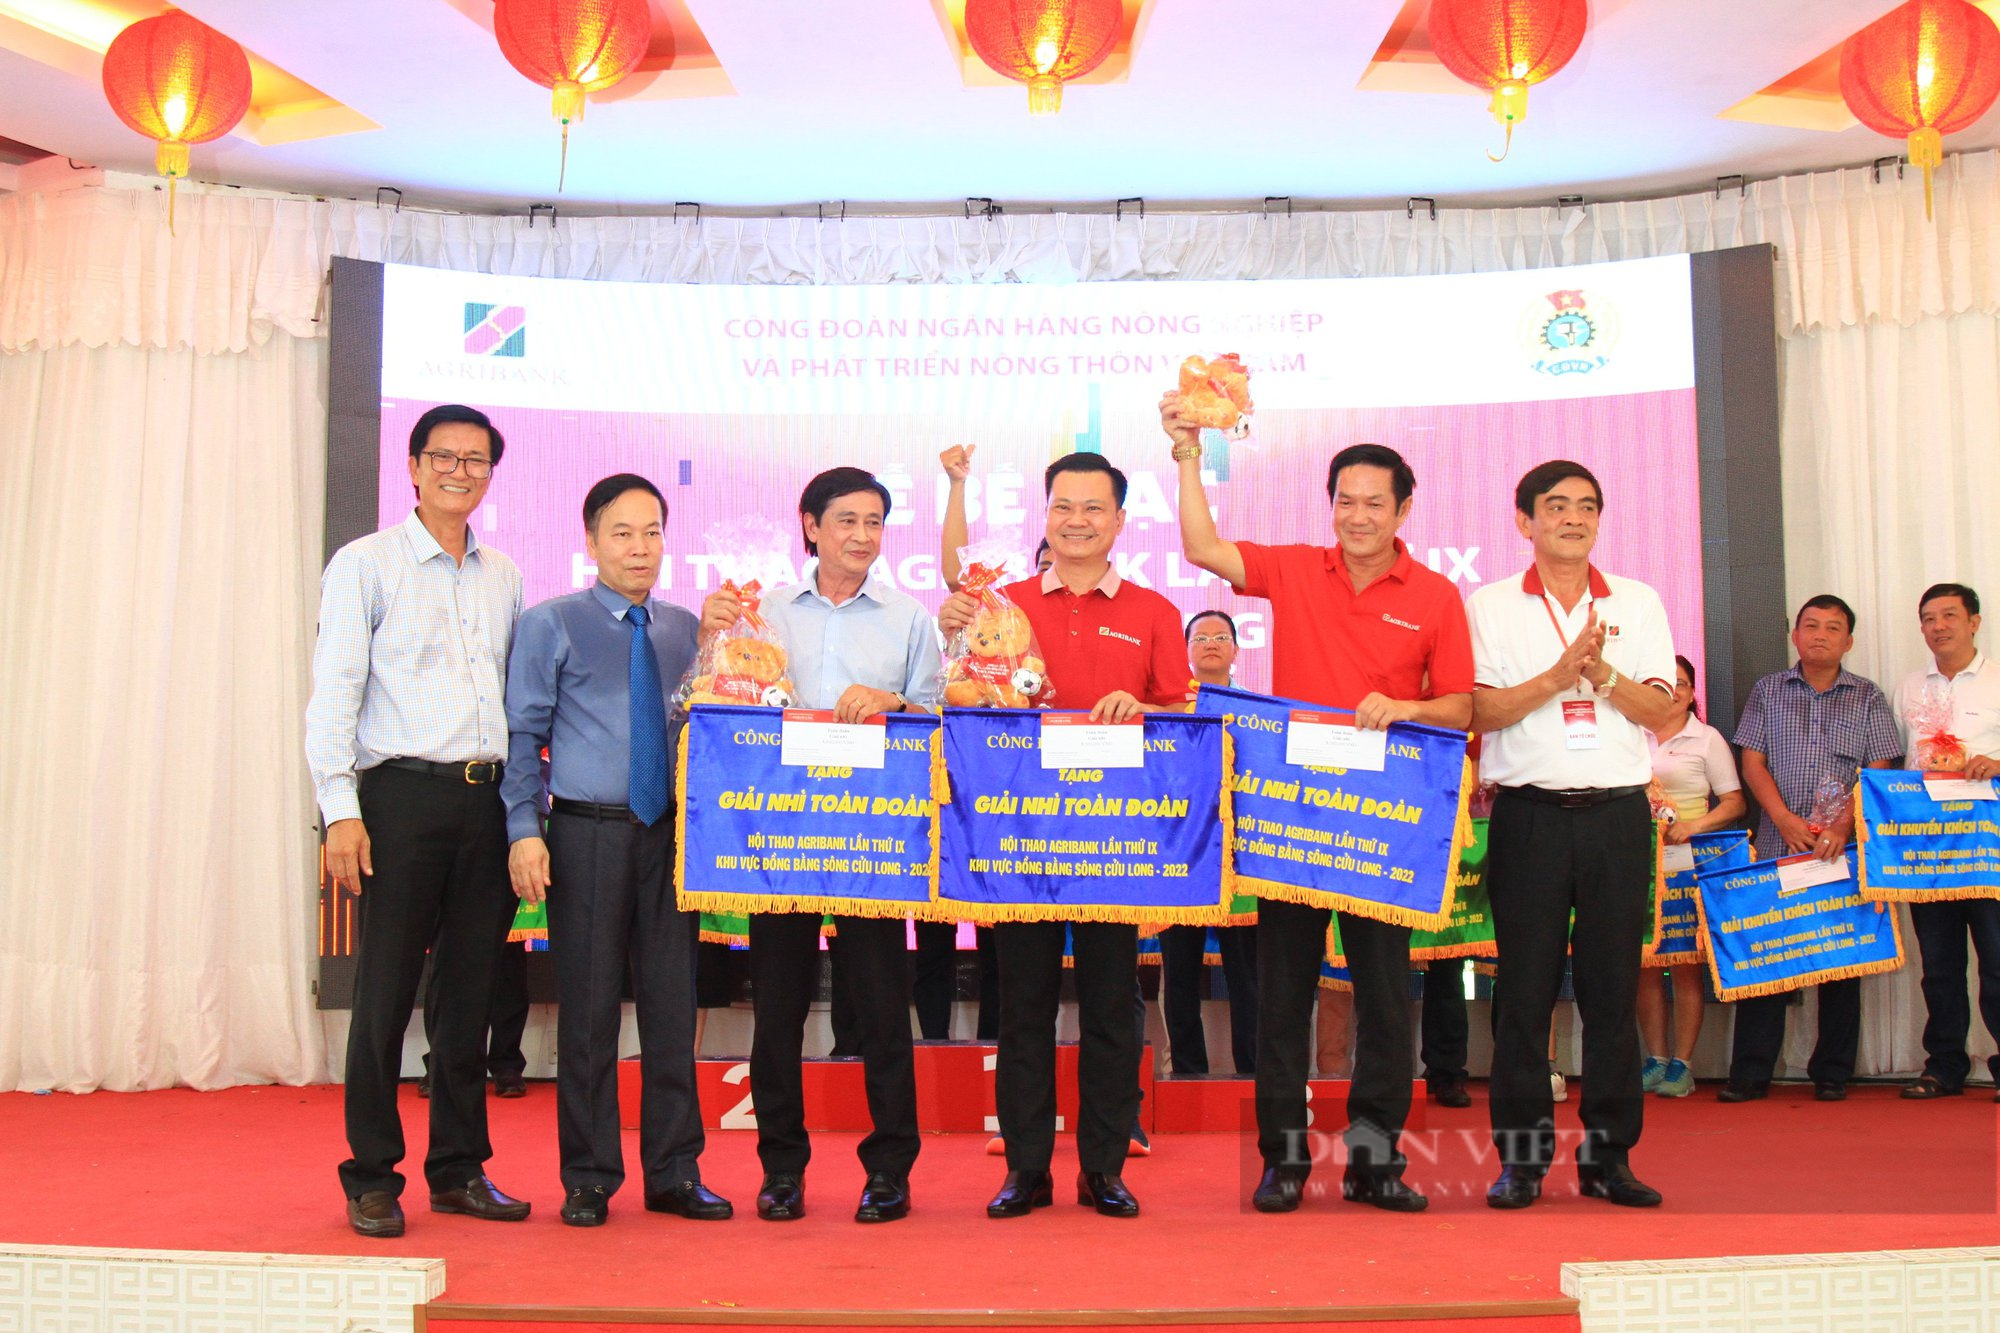 Đoàn Agribank chi nhánh An Giang giành giải Nhất toàn đoàn tại Hội thao Agribank lần thứ IX khu vực ĐBSCL - Ảnh 2.